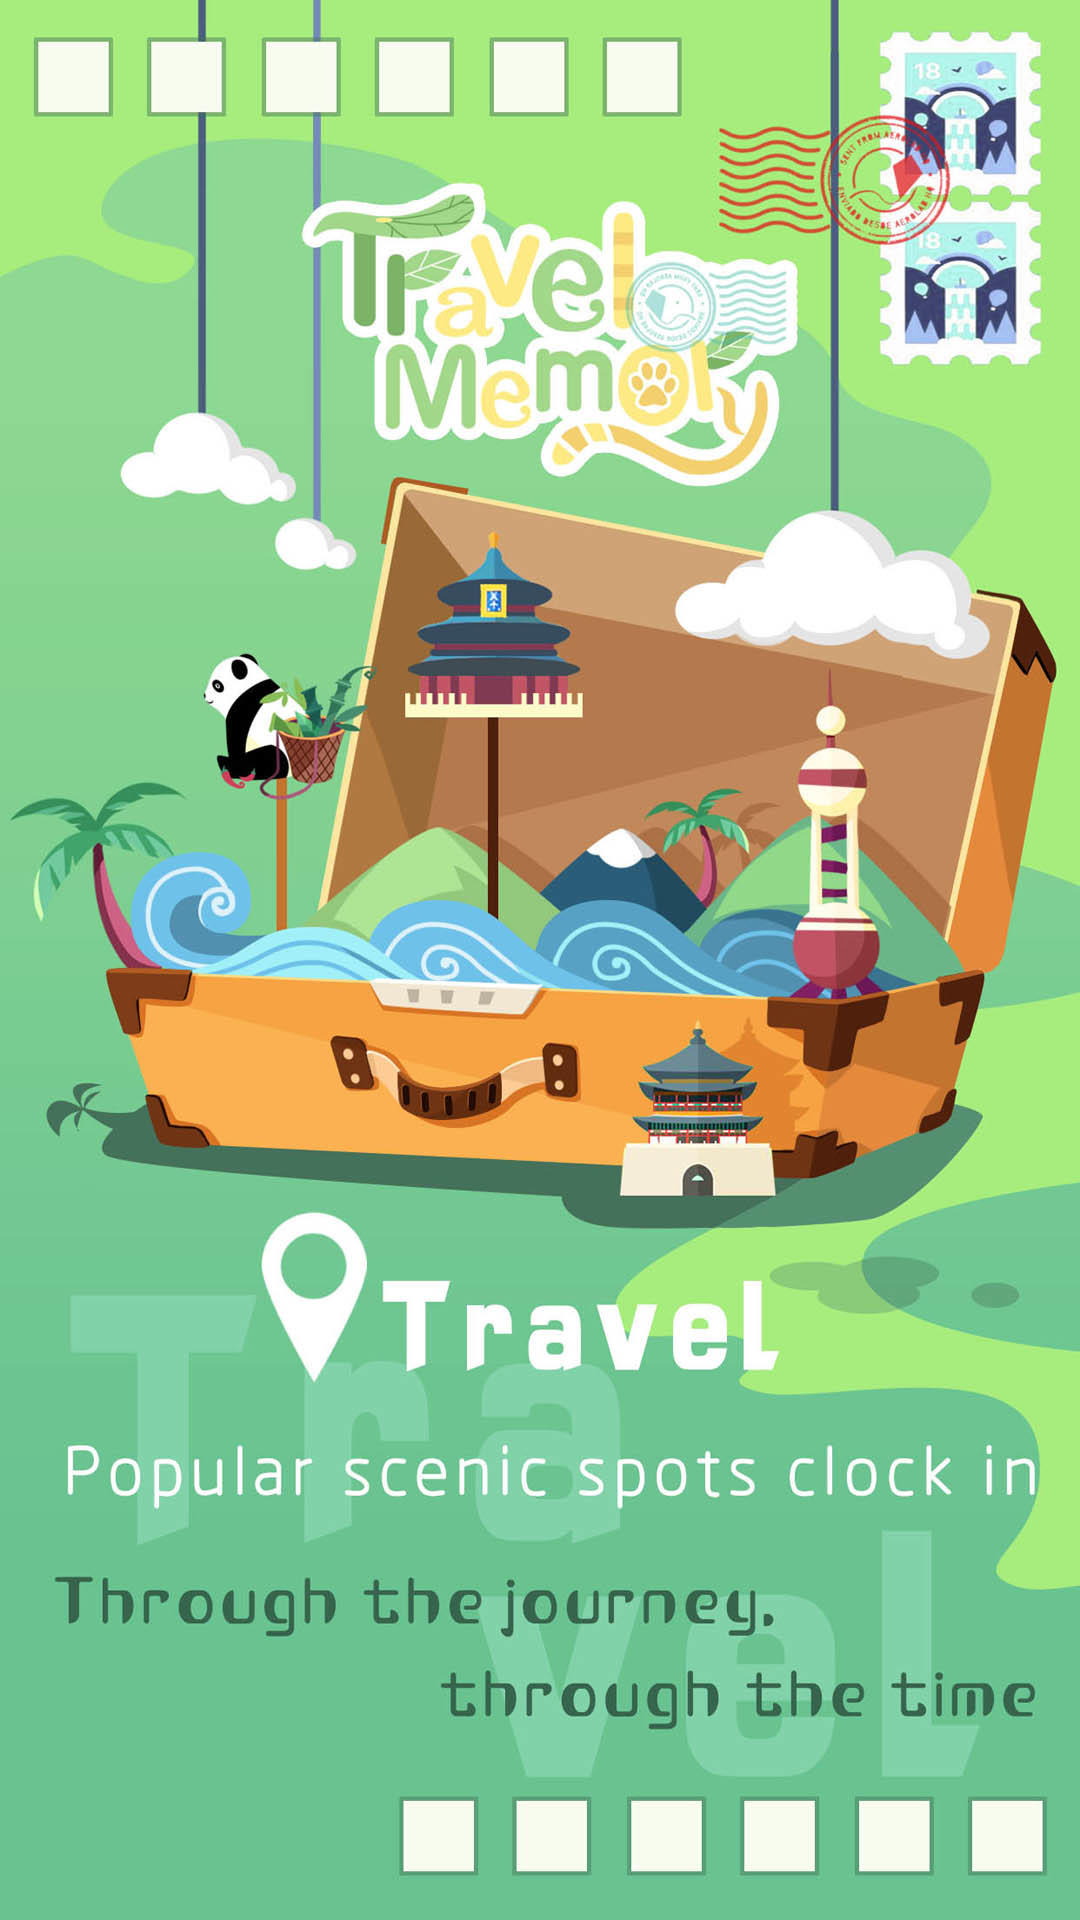 Travel Memory screenshot game